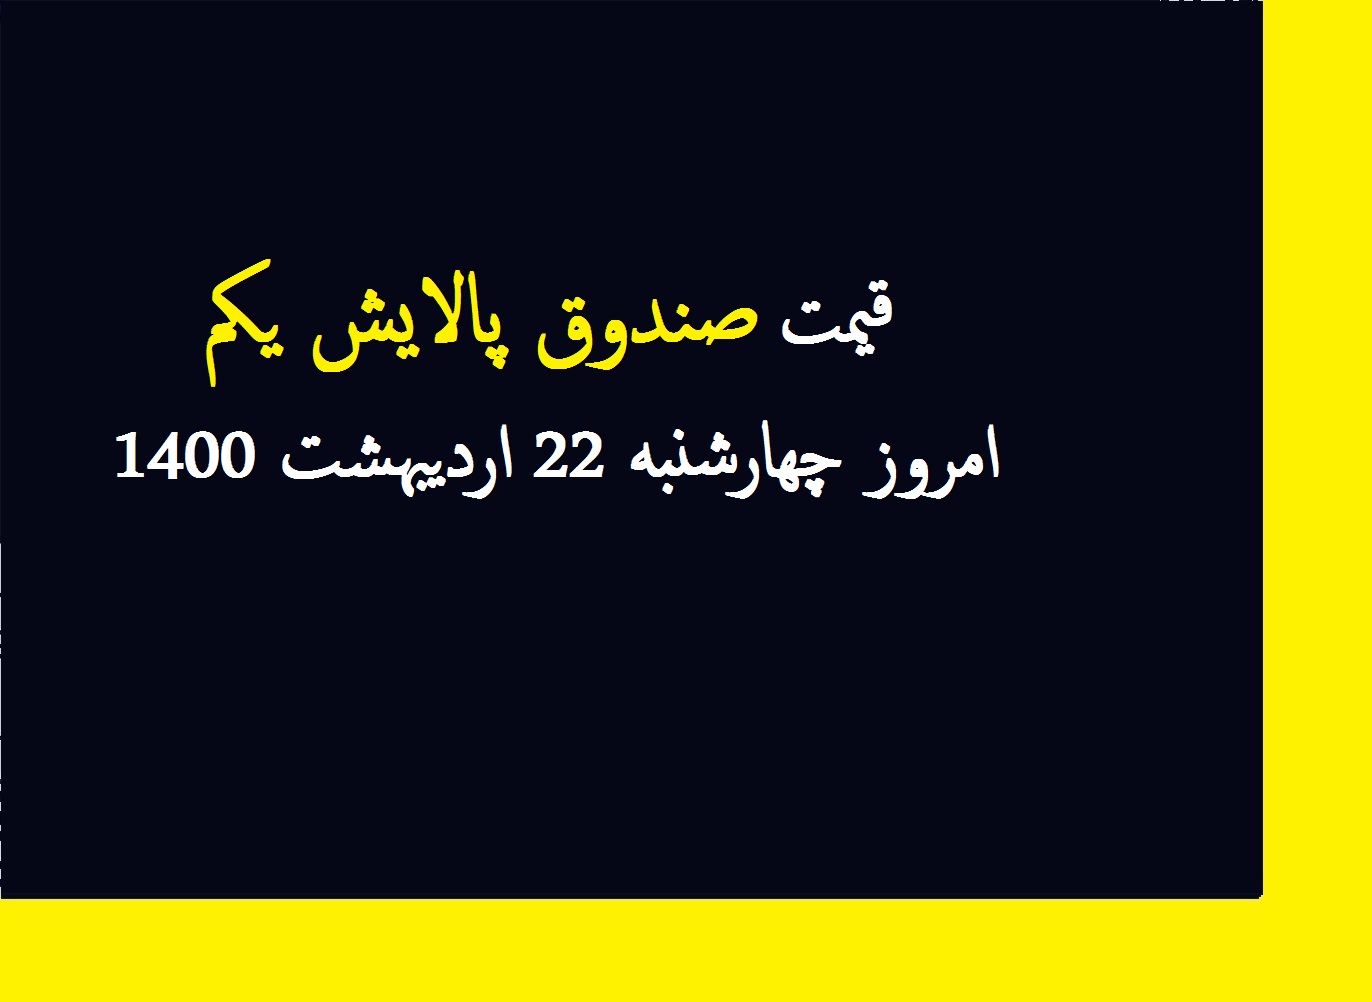 قیمت صندوق پالایش یکم امروز چهارشنبه 22 اردیبهشت 1400